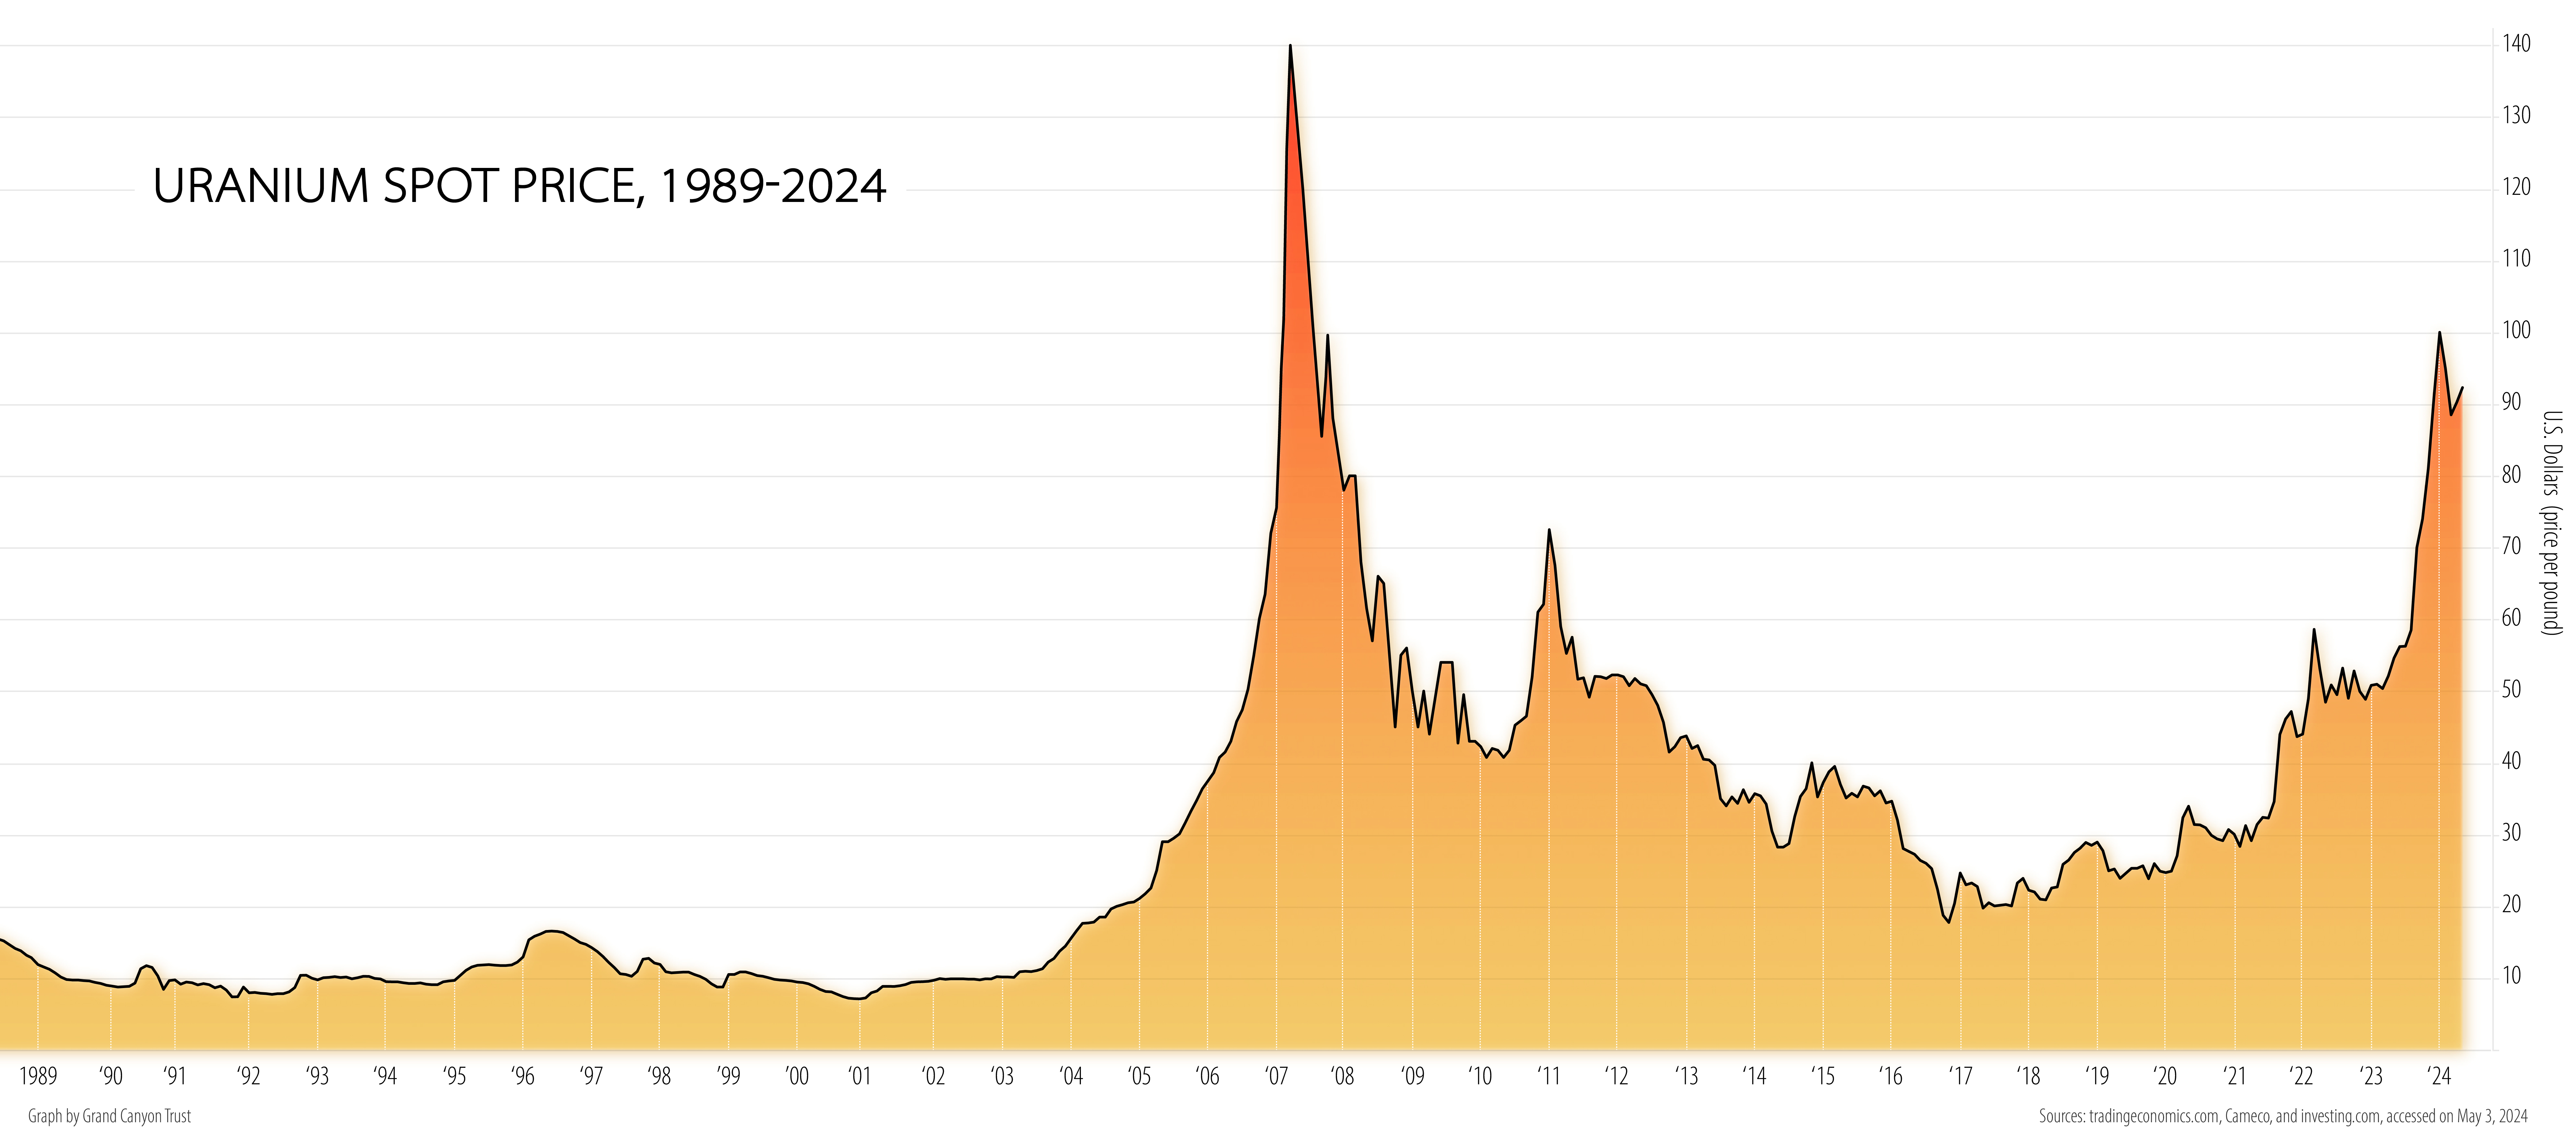 Graph of uranium spot prices 1989-2024